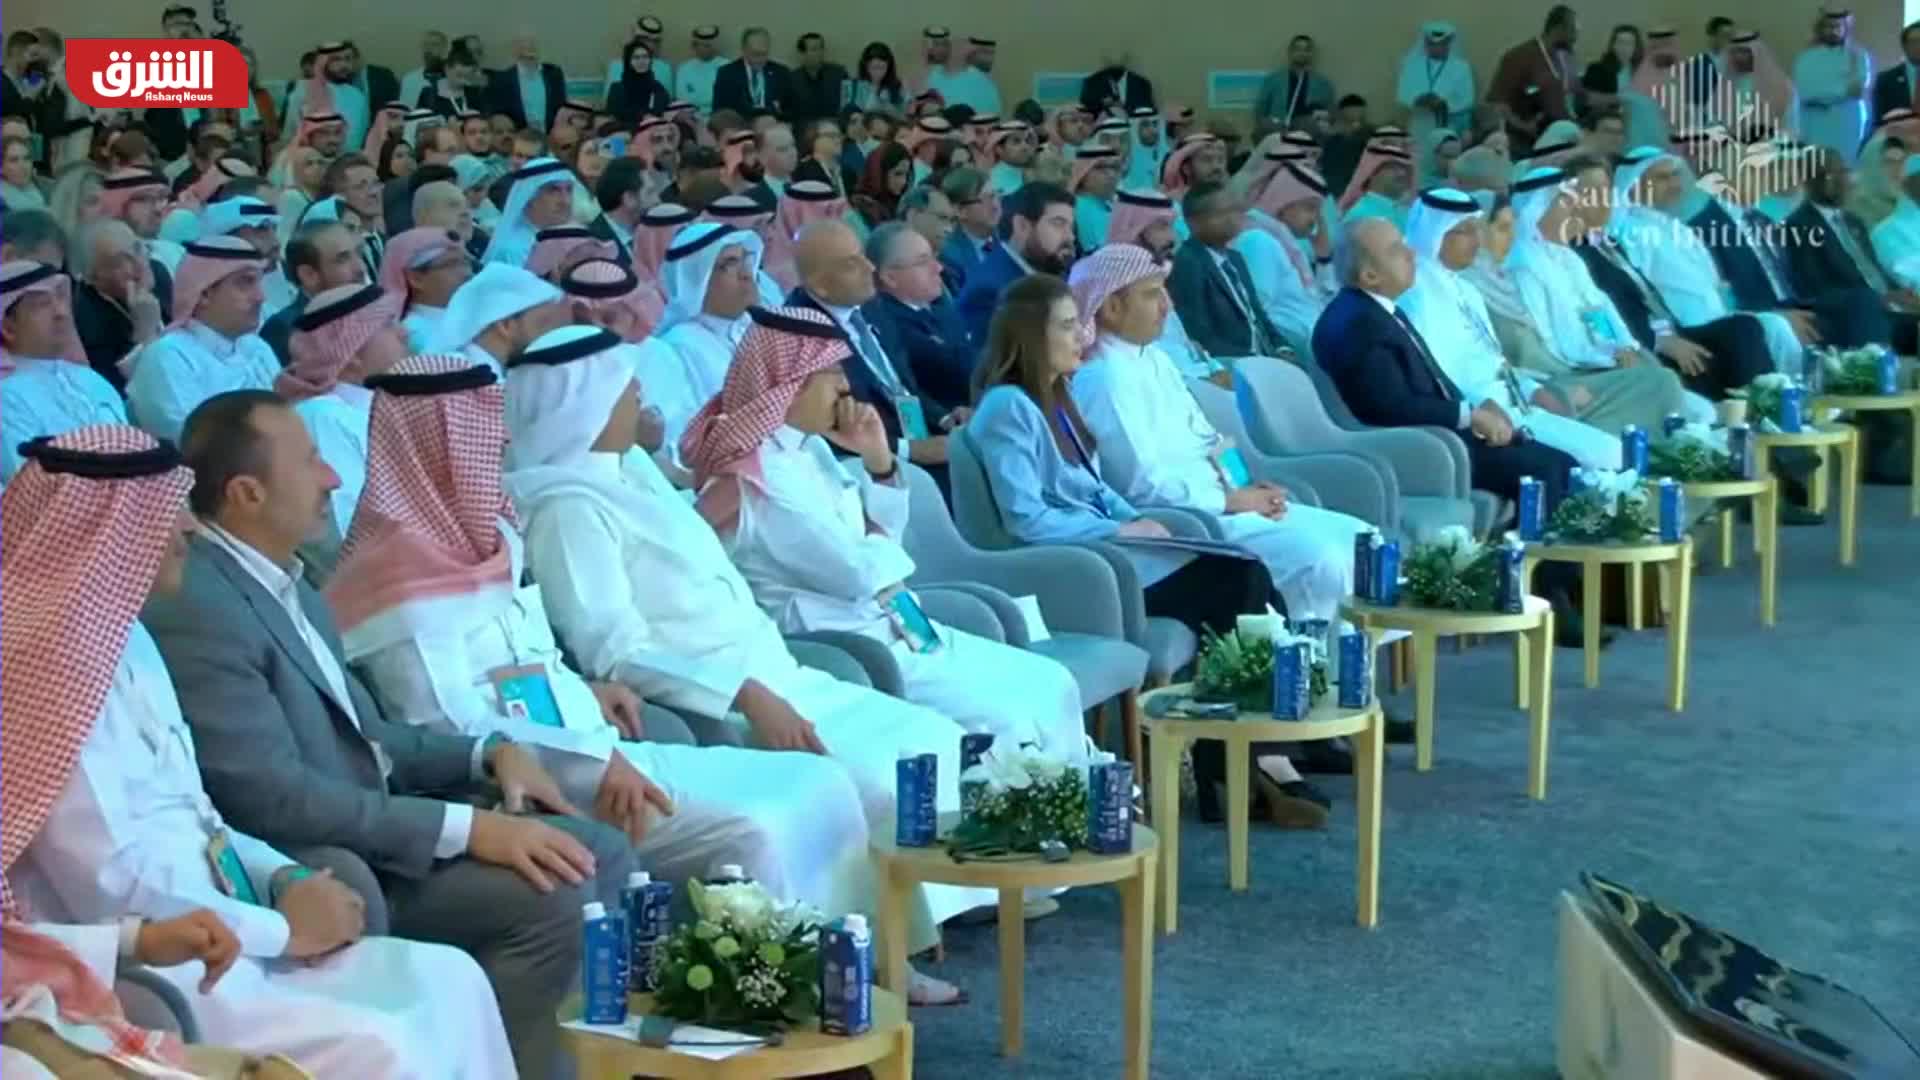 النسخة الثانية من مبادرة السعودية الخضراء - من الطموح إلى العمل